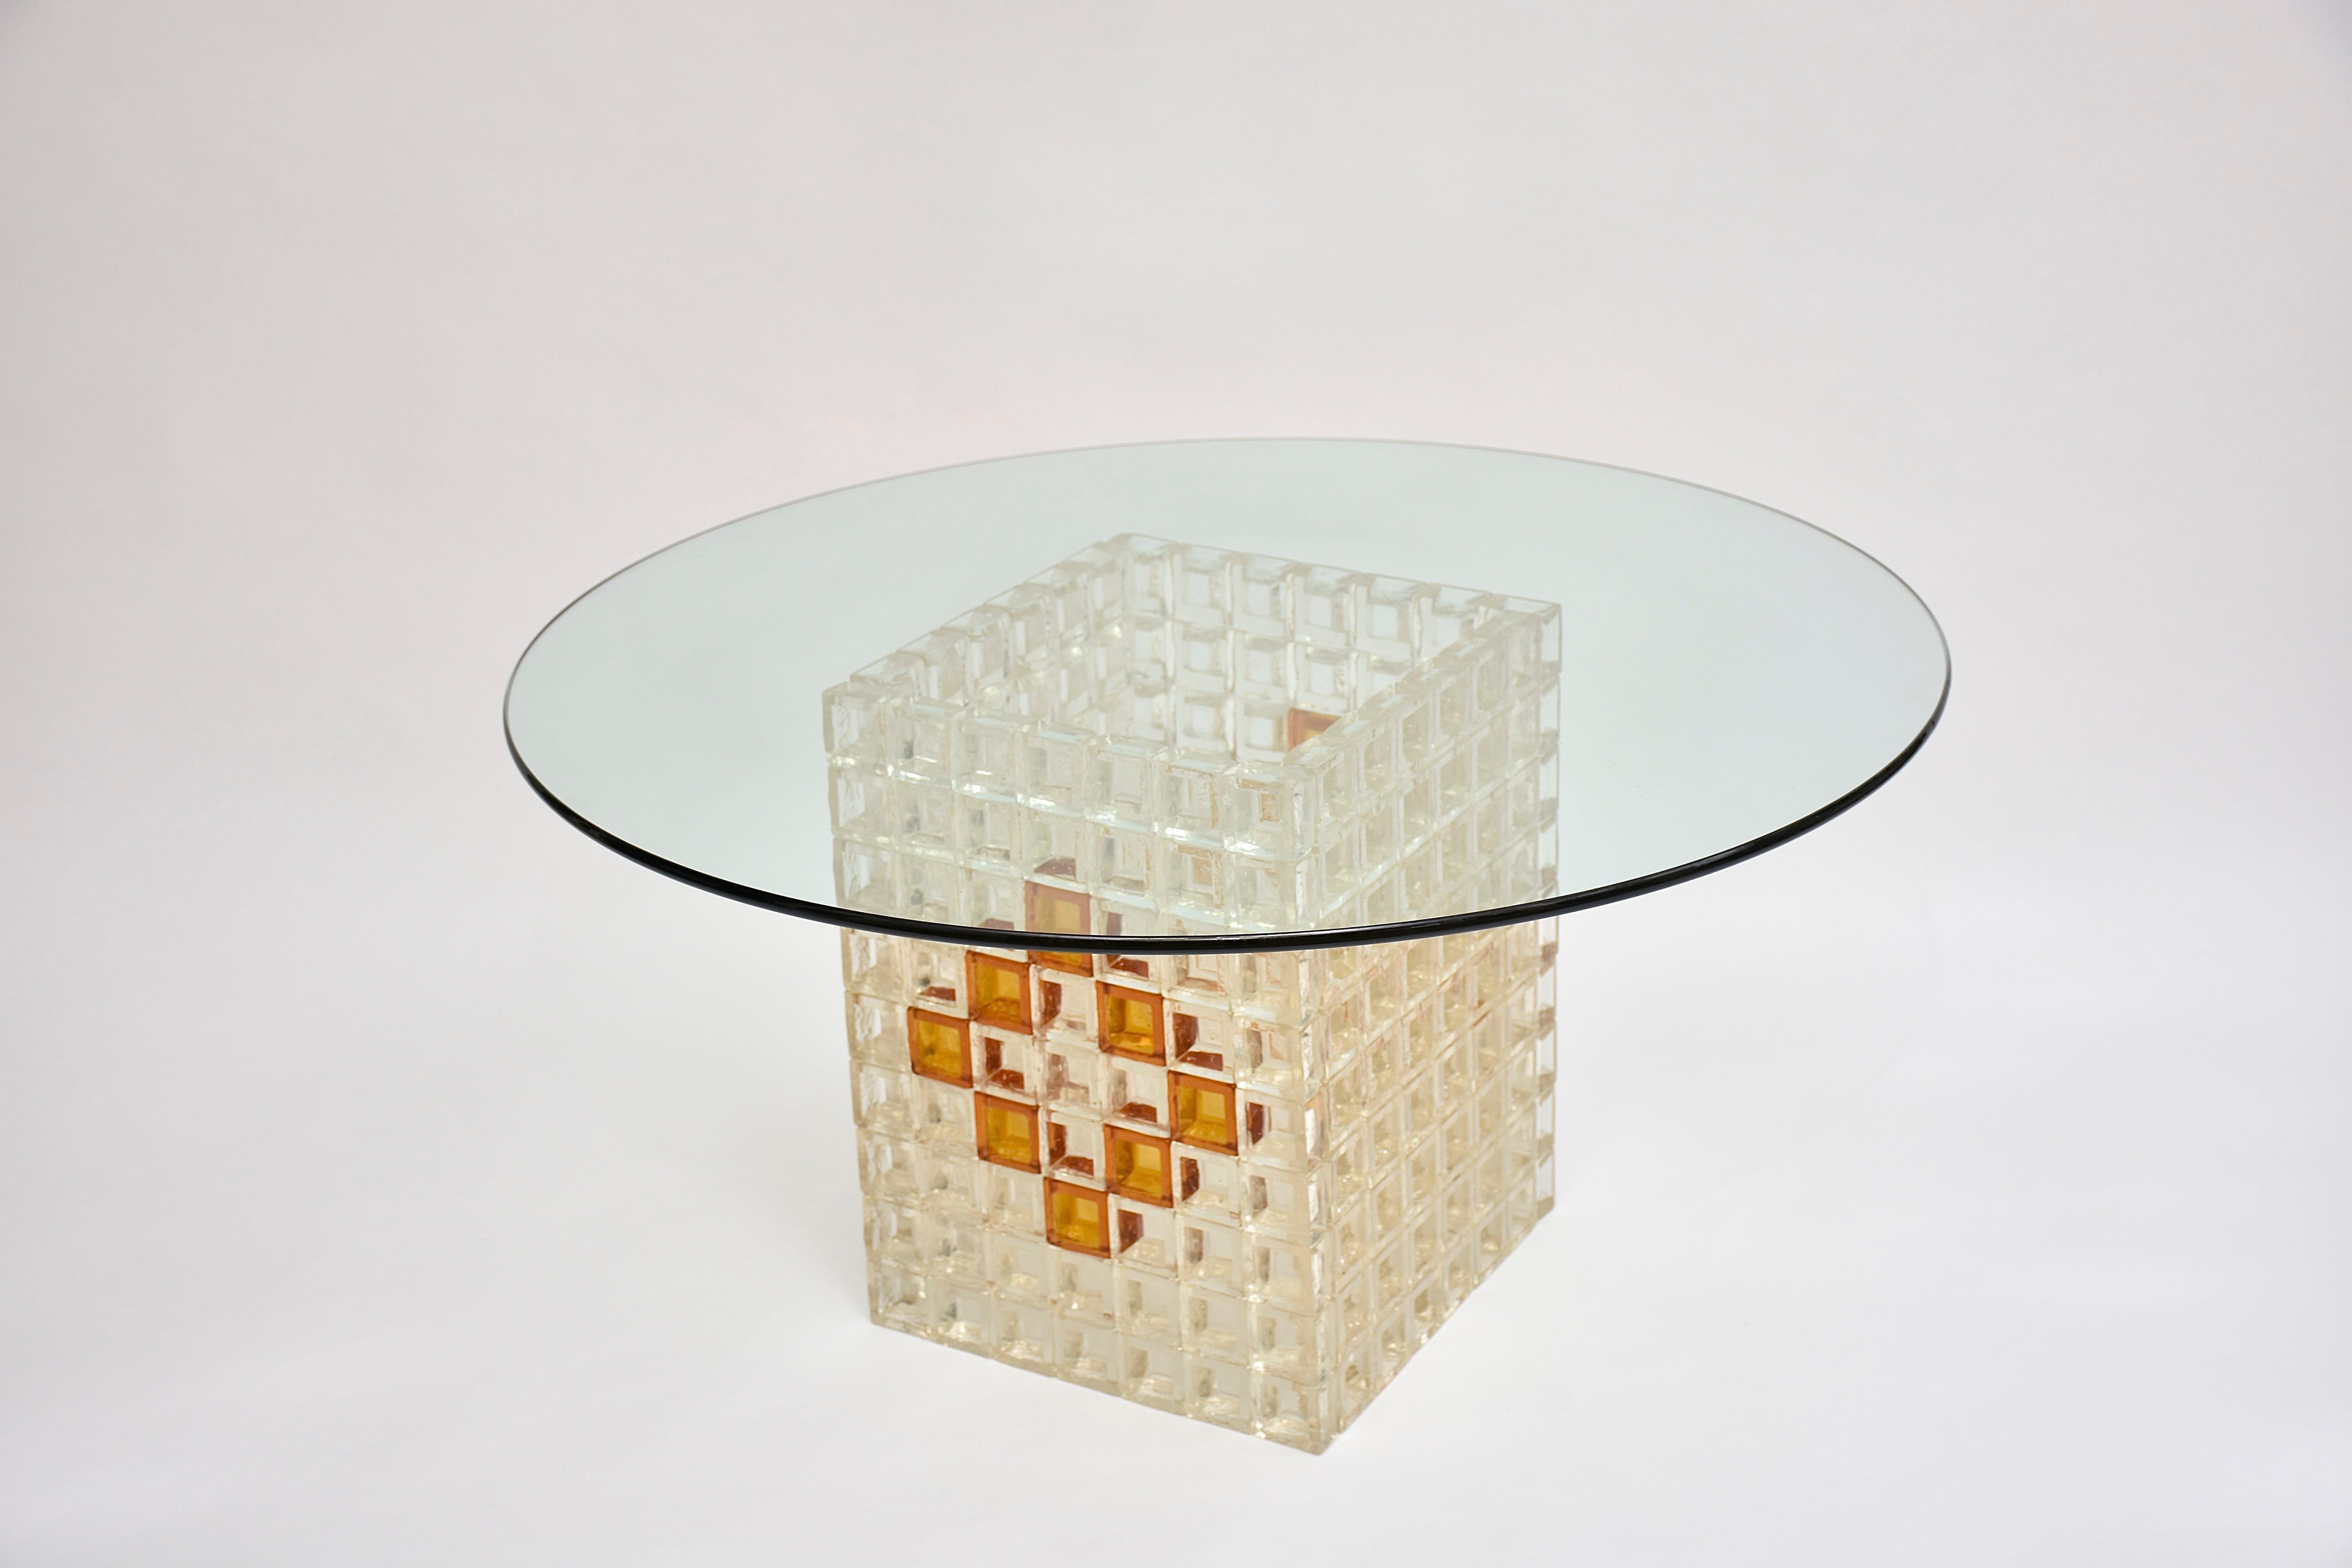 Une table/ table basse très élégante et rare, réalisée par le maître verrier Albano Poli pour sa société Poliarte.
La base en forme cubique en verre de Murano clair et coloré.
Avec un plateau en verre rond transparent.

Hauteur du cube - 49 cm
-